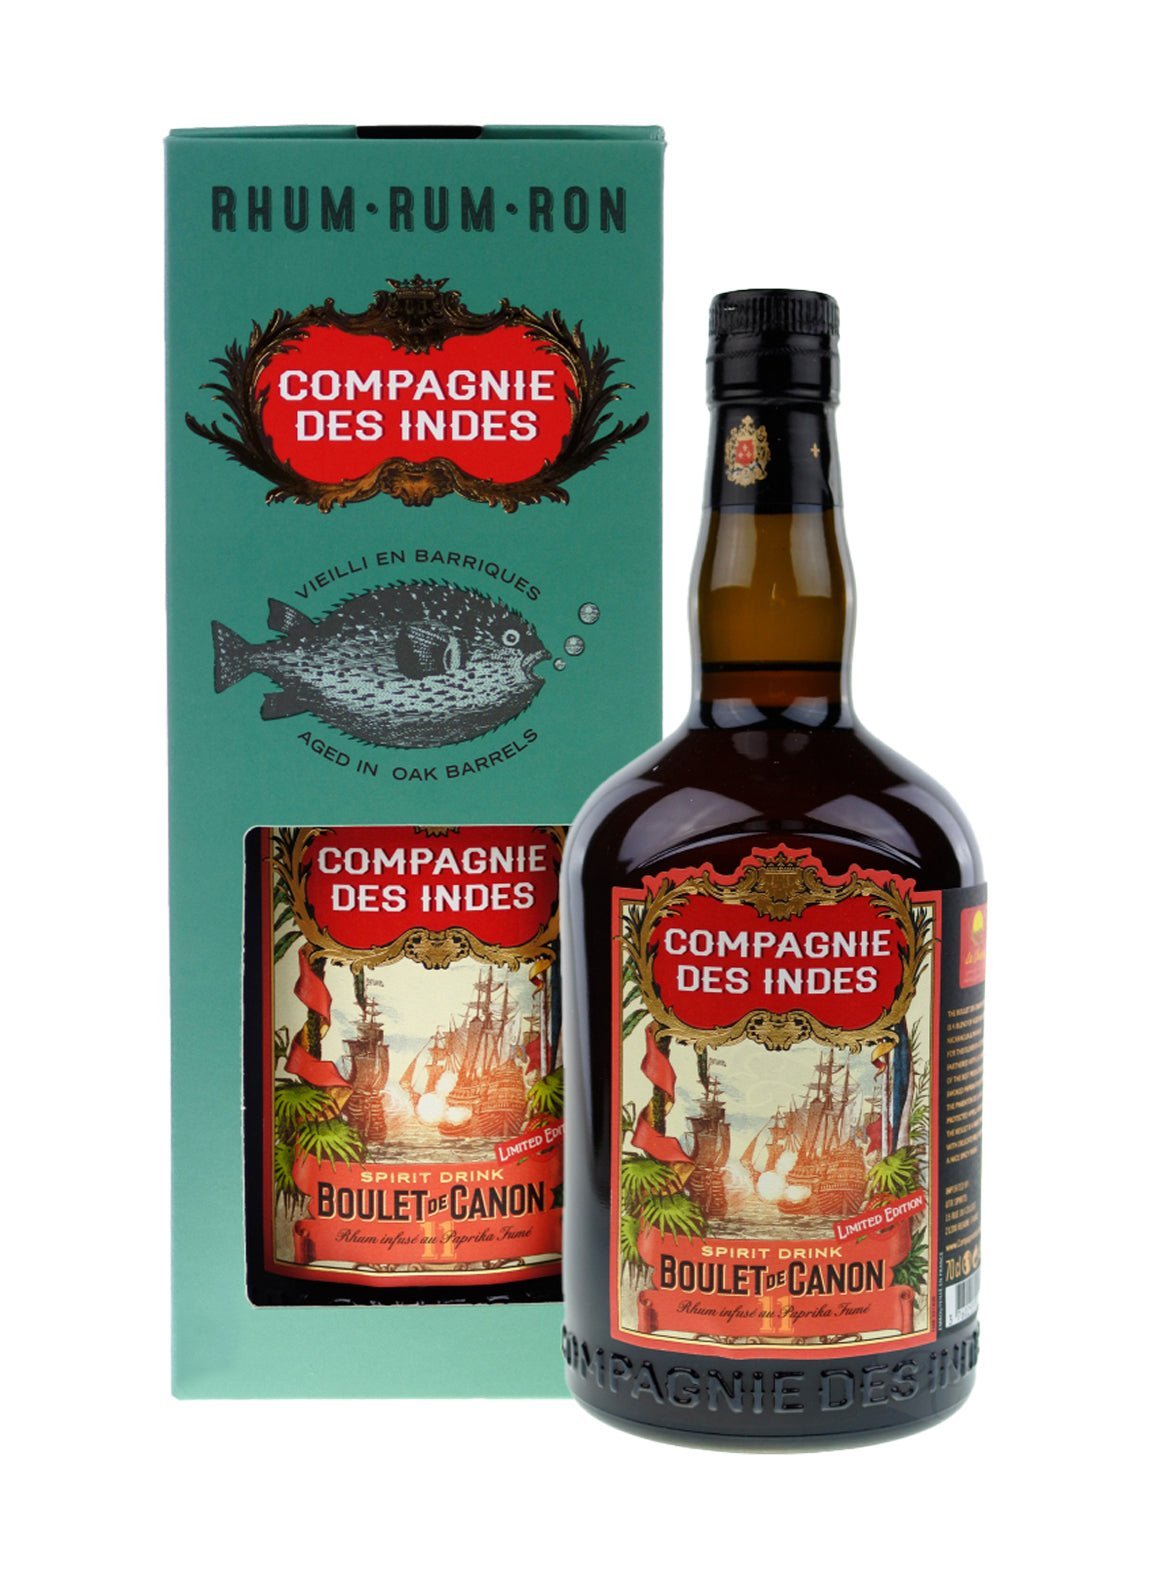 Compagnie des Indes Rum Boulet de Canon No.11 46% 700ml | Rum | Shop online at Spirits of France